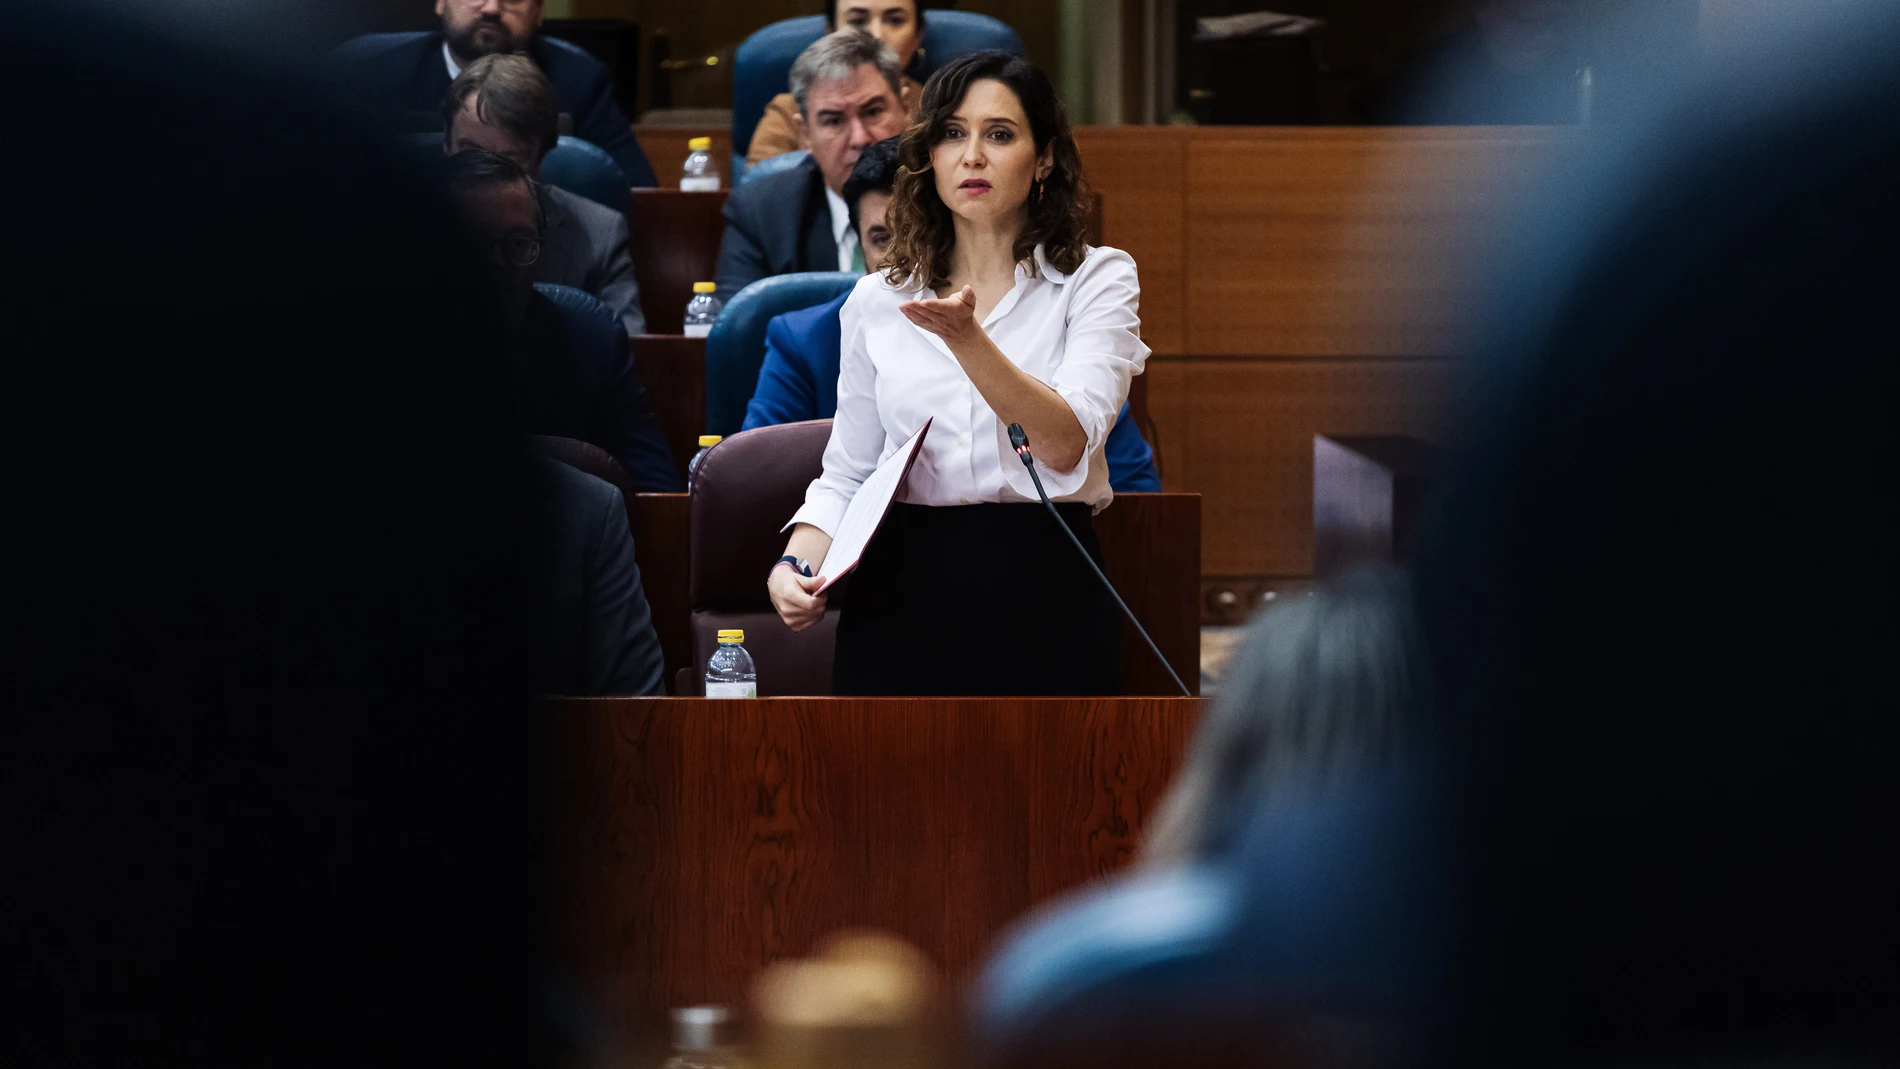 La presidenta de la Comunidad de Madrid, Isabel Díaz Ayuso, interviene durante una sesión plenaria en la Asamblea de Madrid